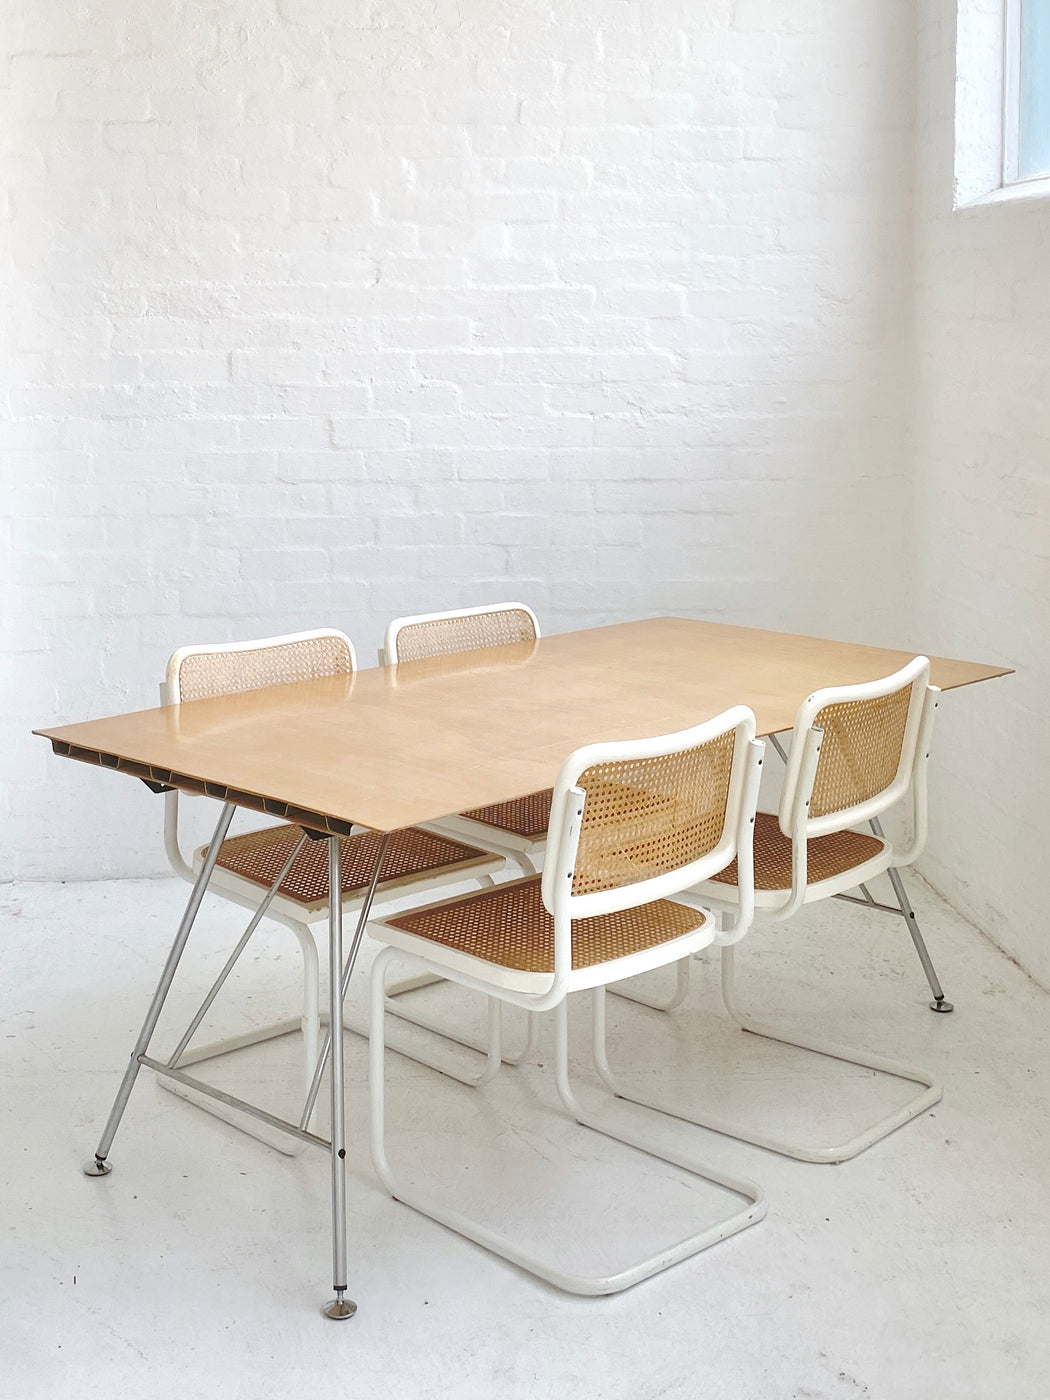 Atelier Alinea 'Unistandard' Table